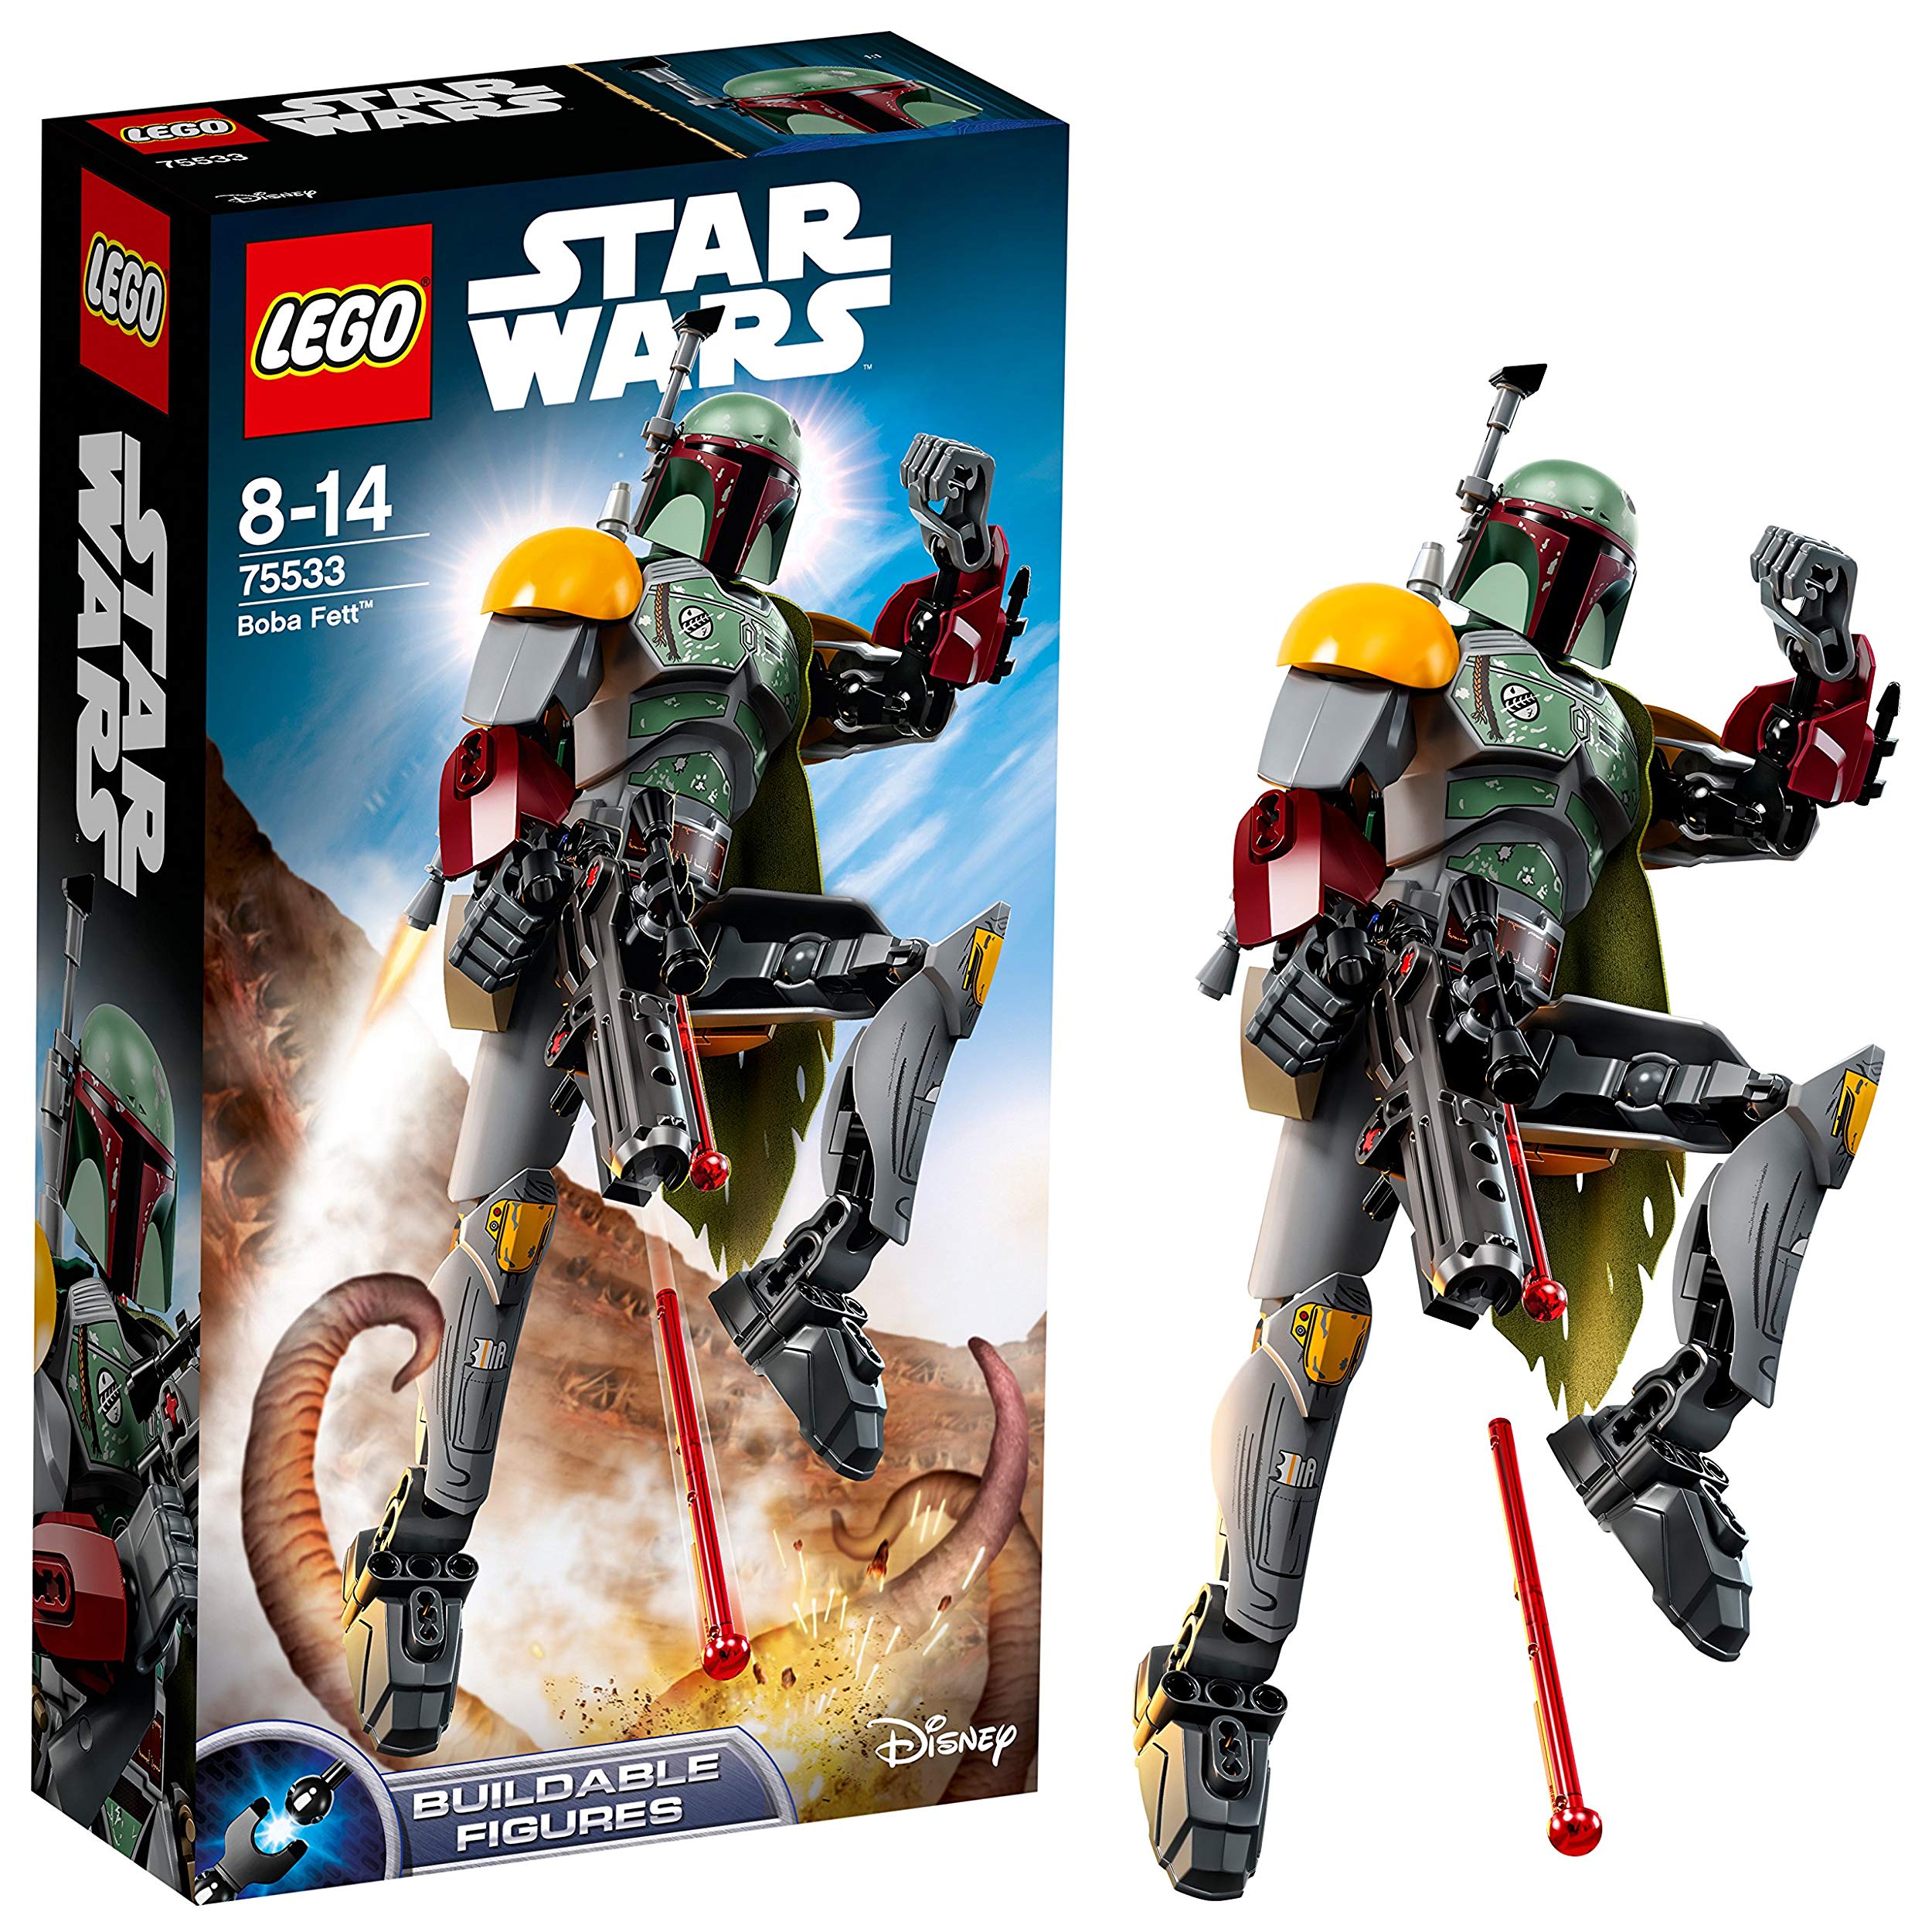 Lego Star Wars Boba Fett Bare Figure